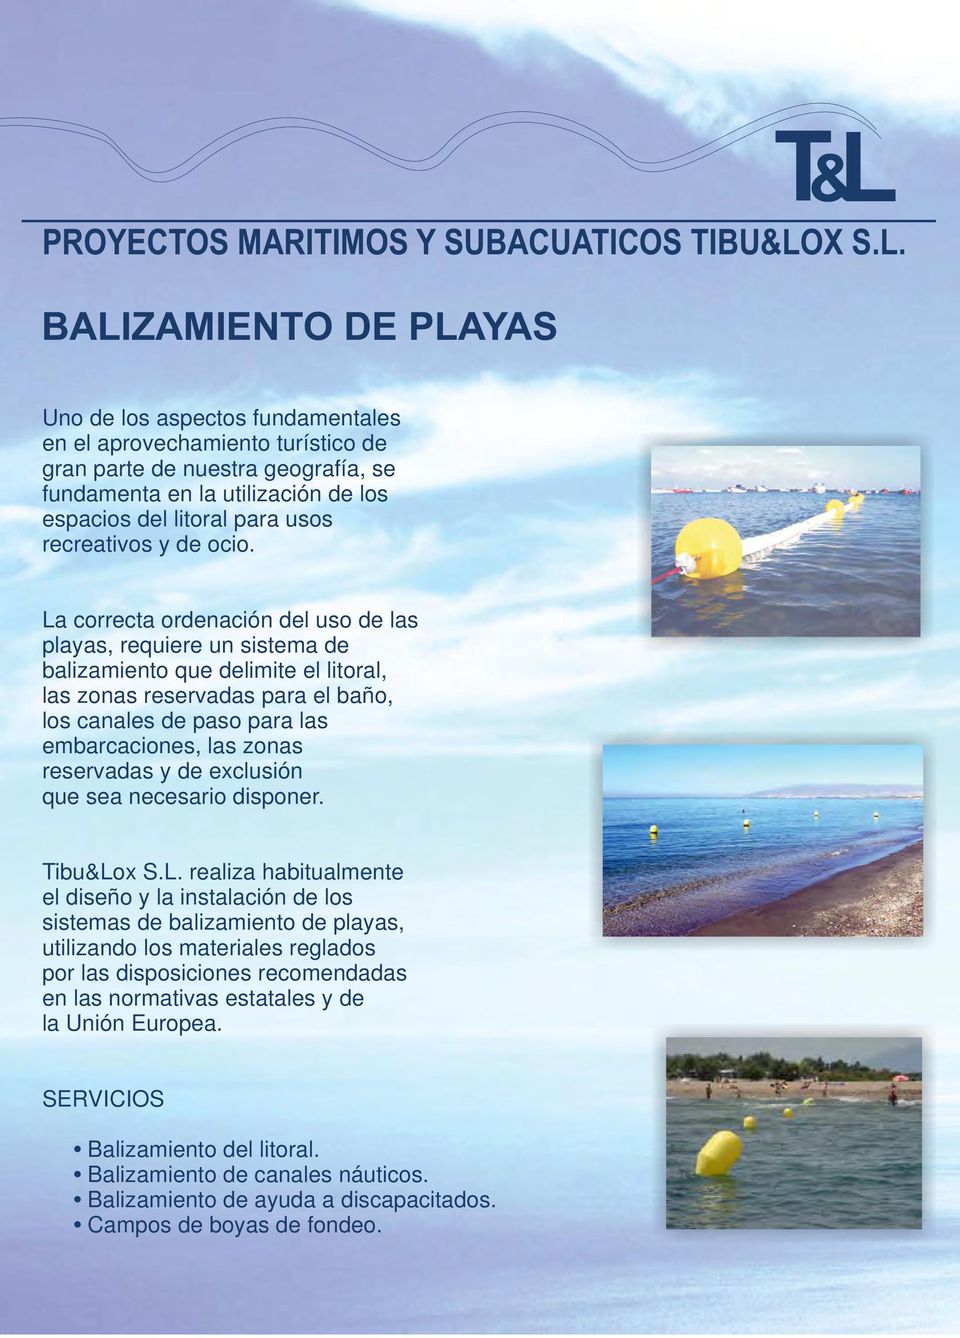 La correcta ordenación del uso de las playas, requiere un sistema de balizamiento que delimite el litoral, las zonas reservadas para el baño, los canales de paso para las embarcaciones, las zonas